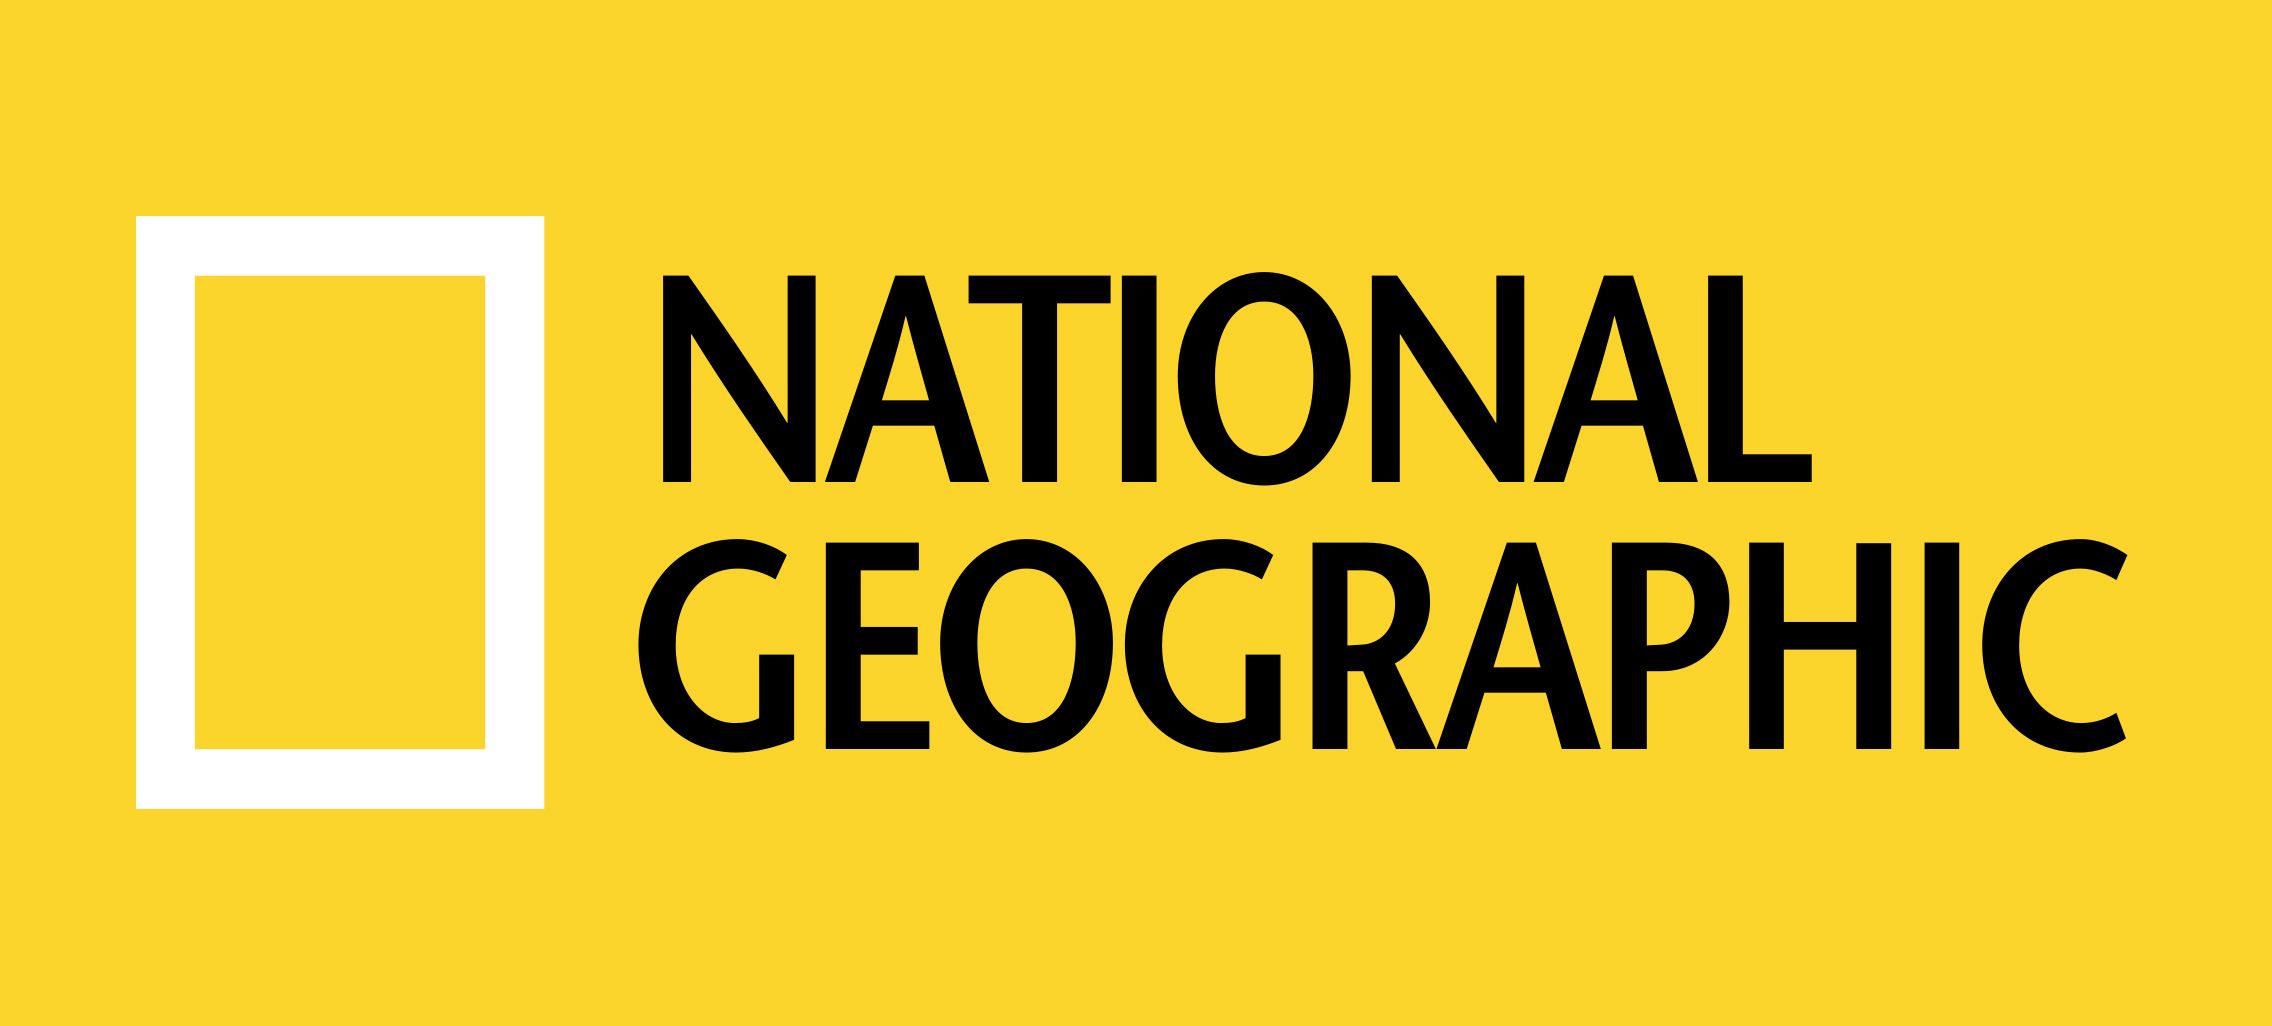 National Geographic Logo - National Geographic Logo, National Geographic Symbol, Meaning